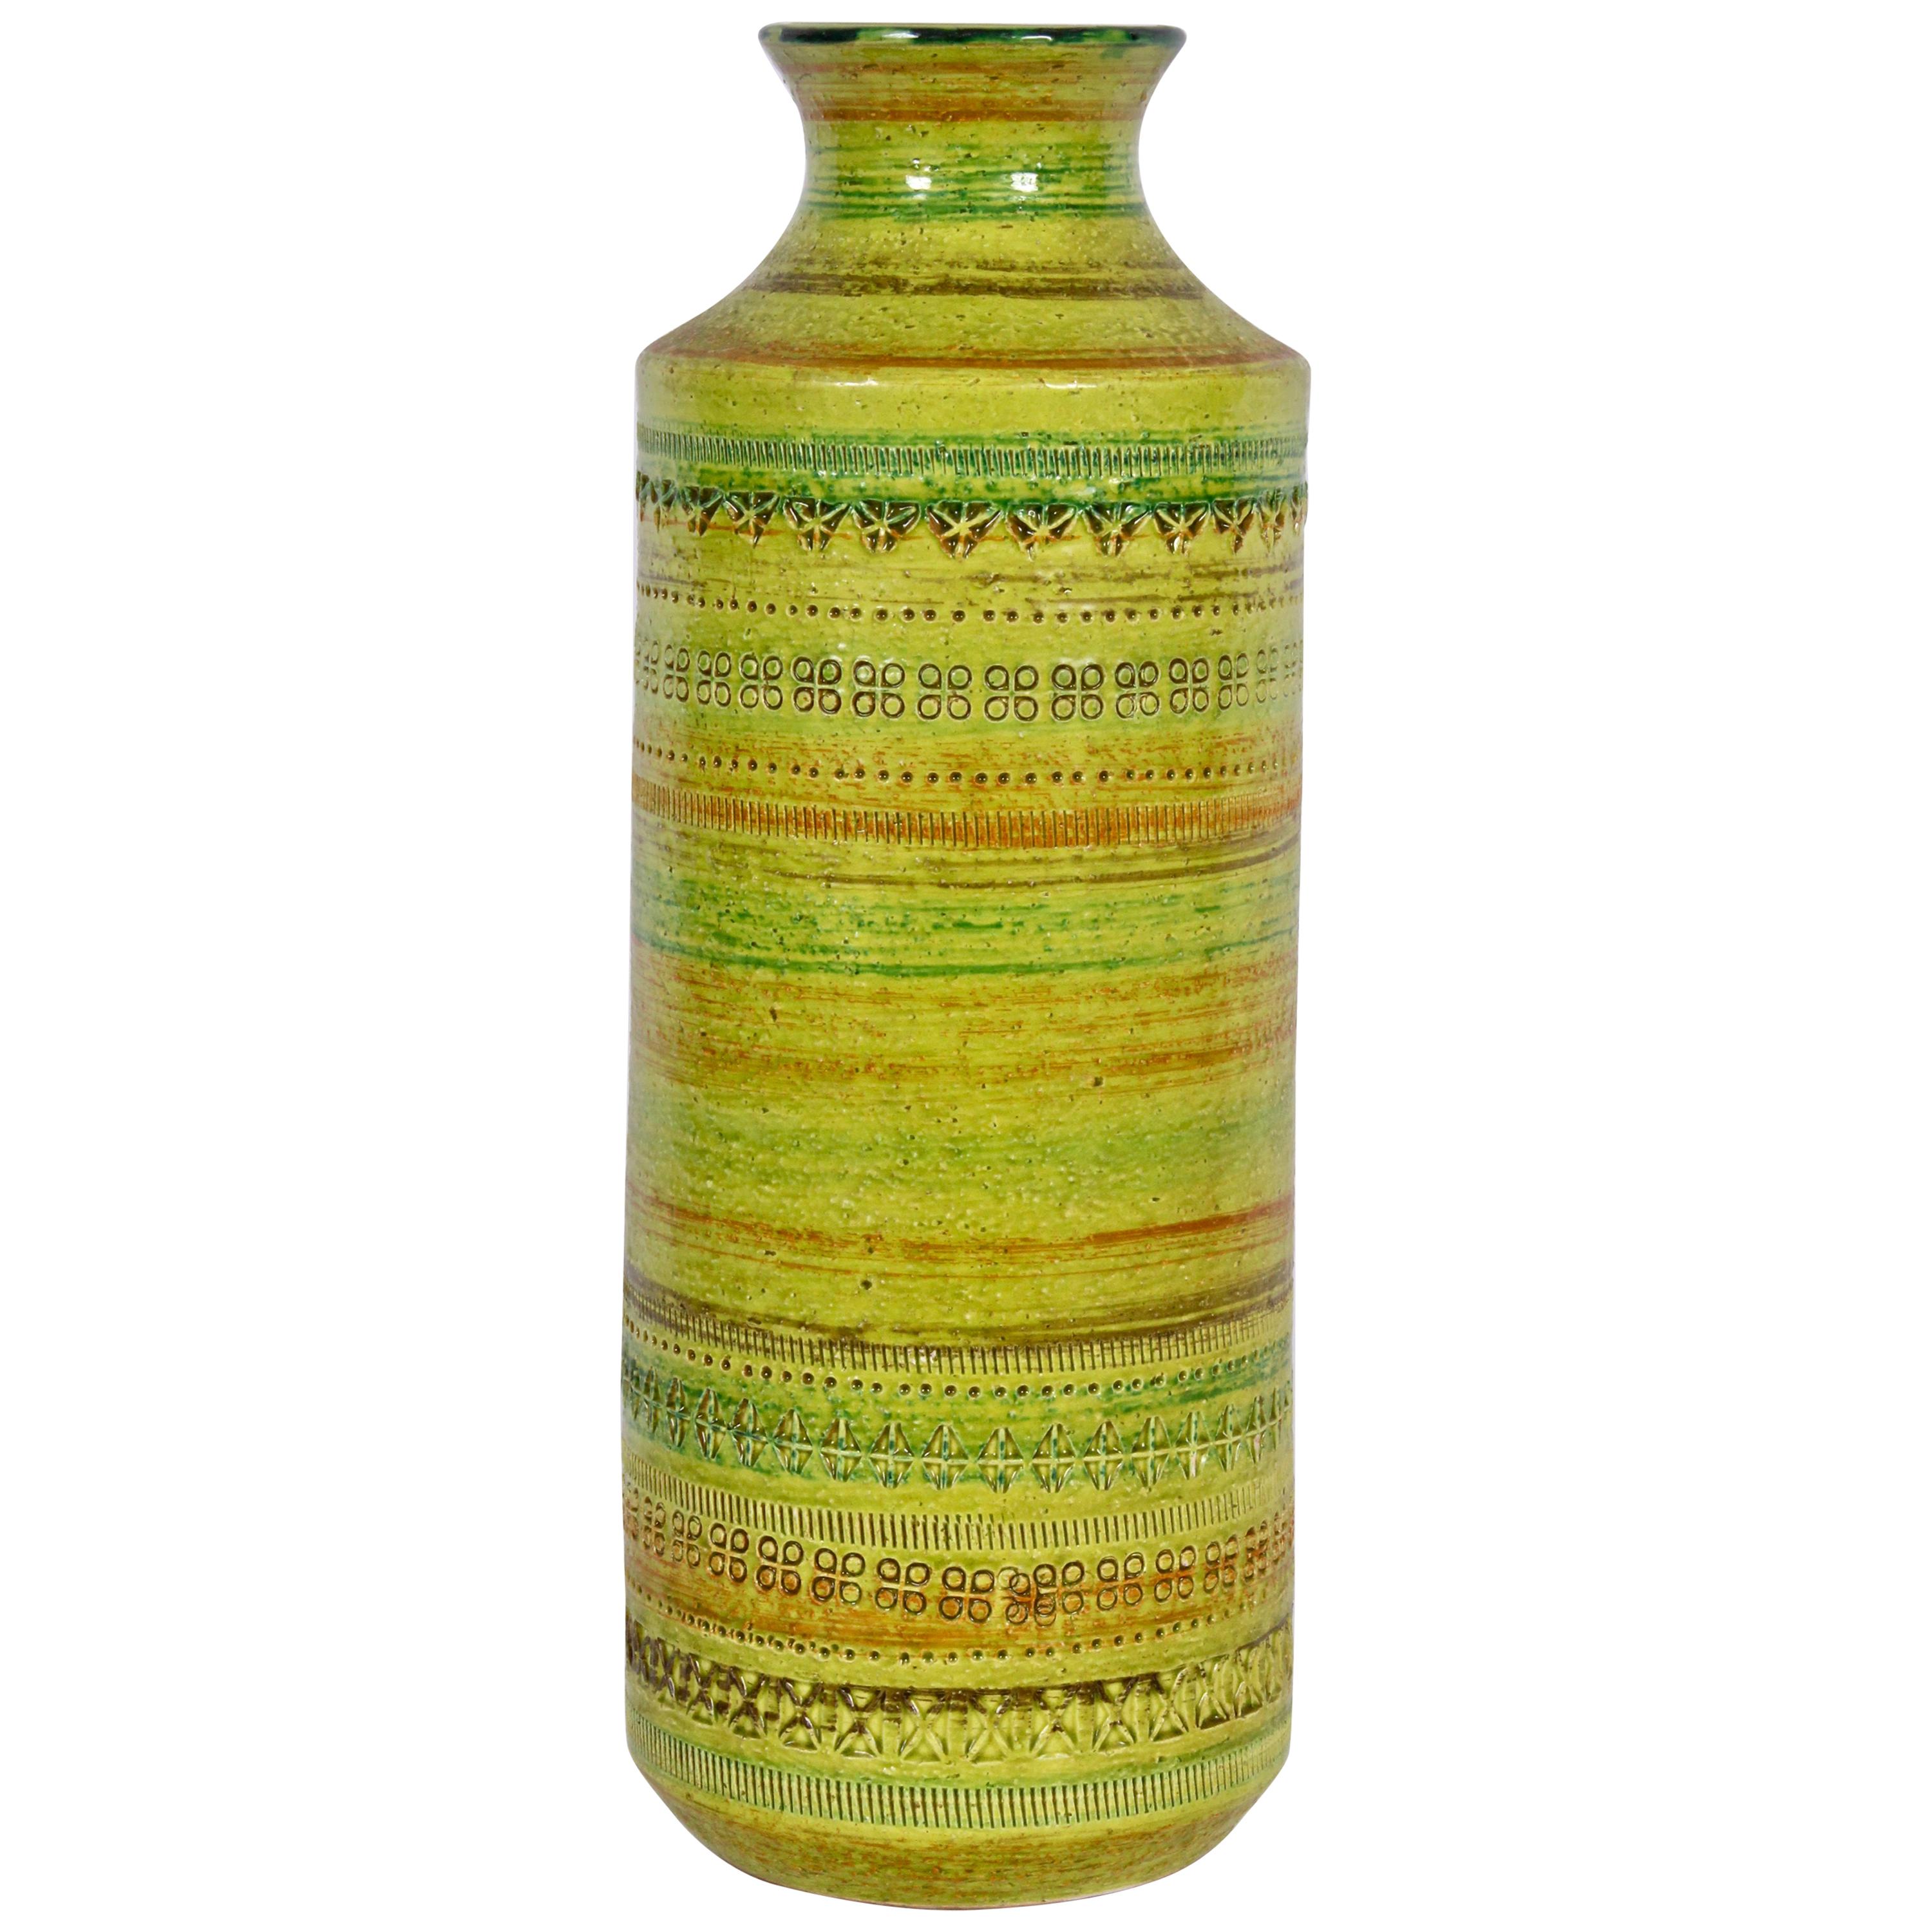 Aldo Londi Bitossi for Rosenthal Netter Incised Spring Green Ceramic Vase